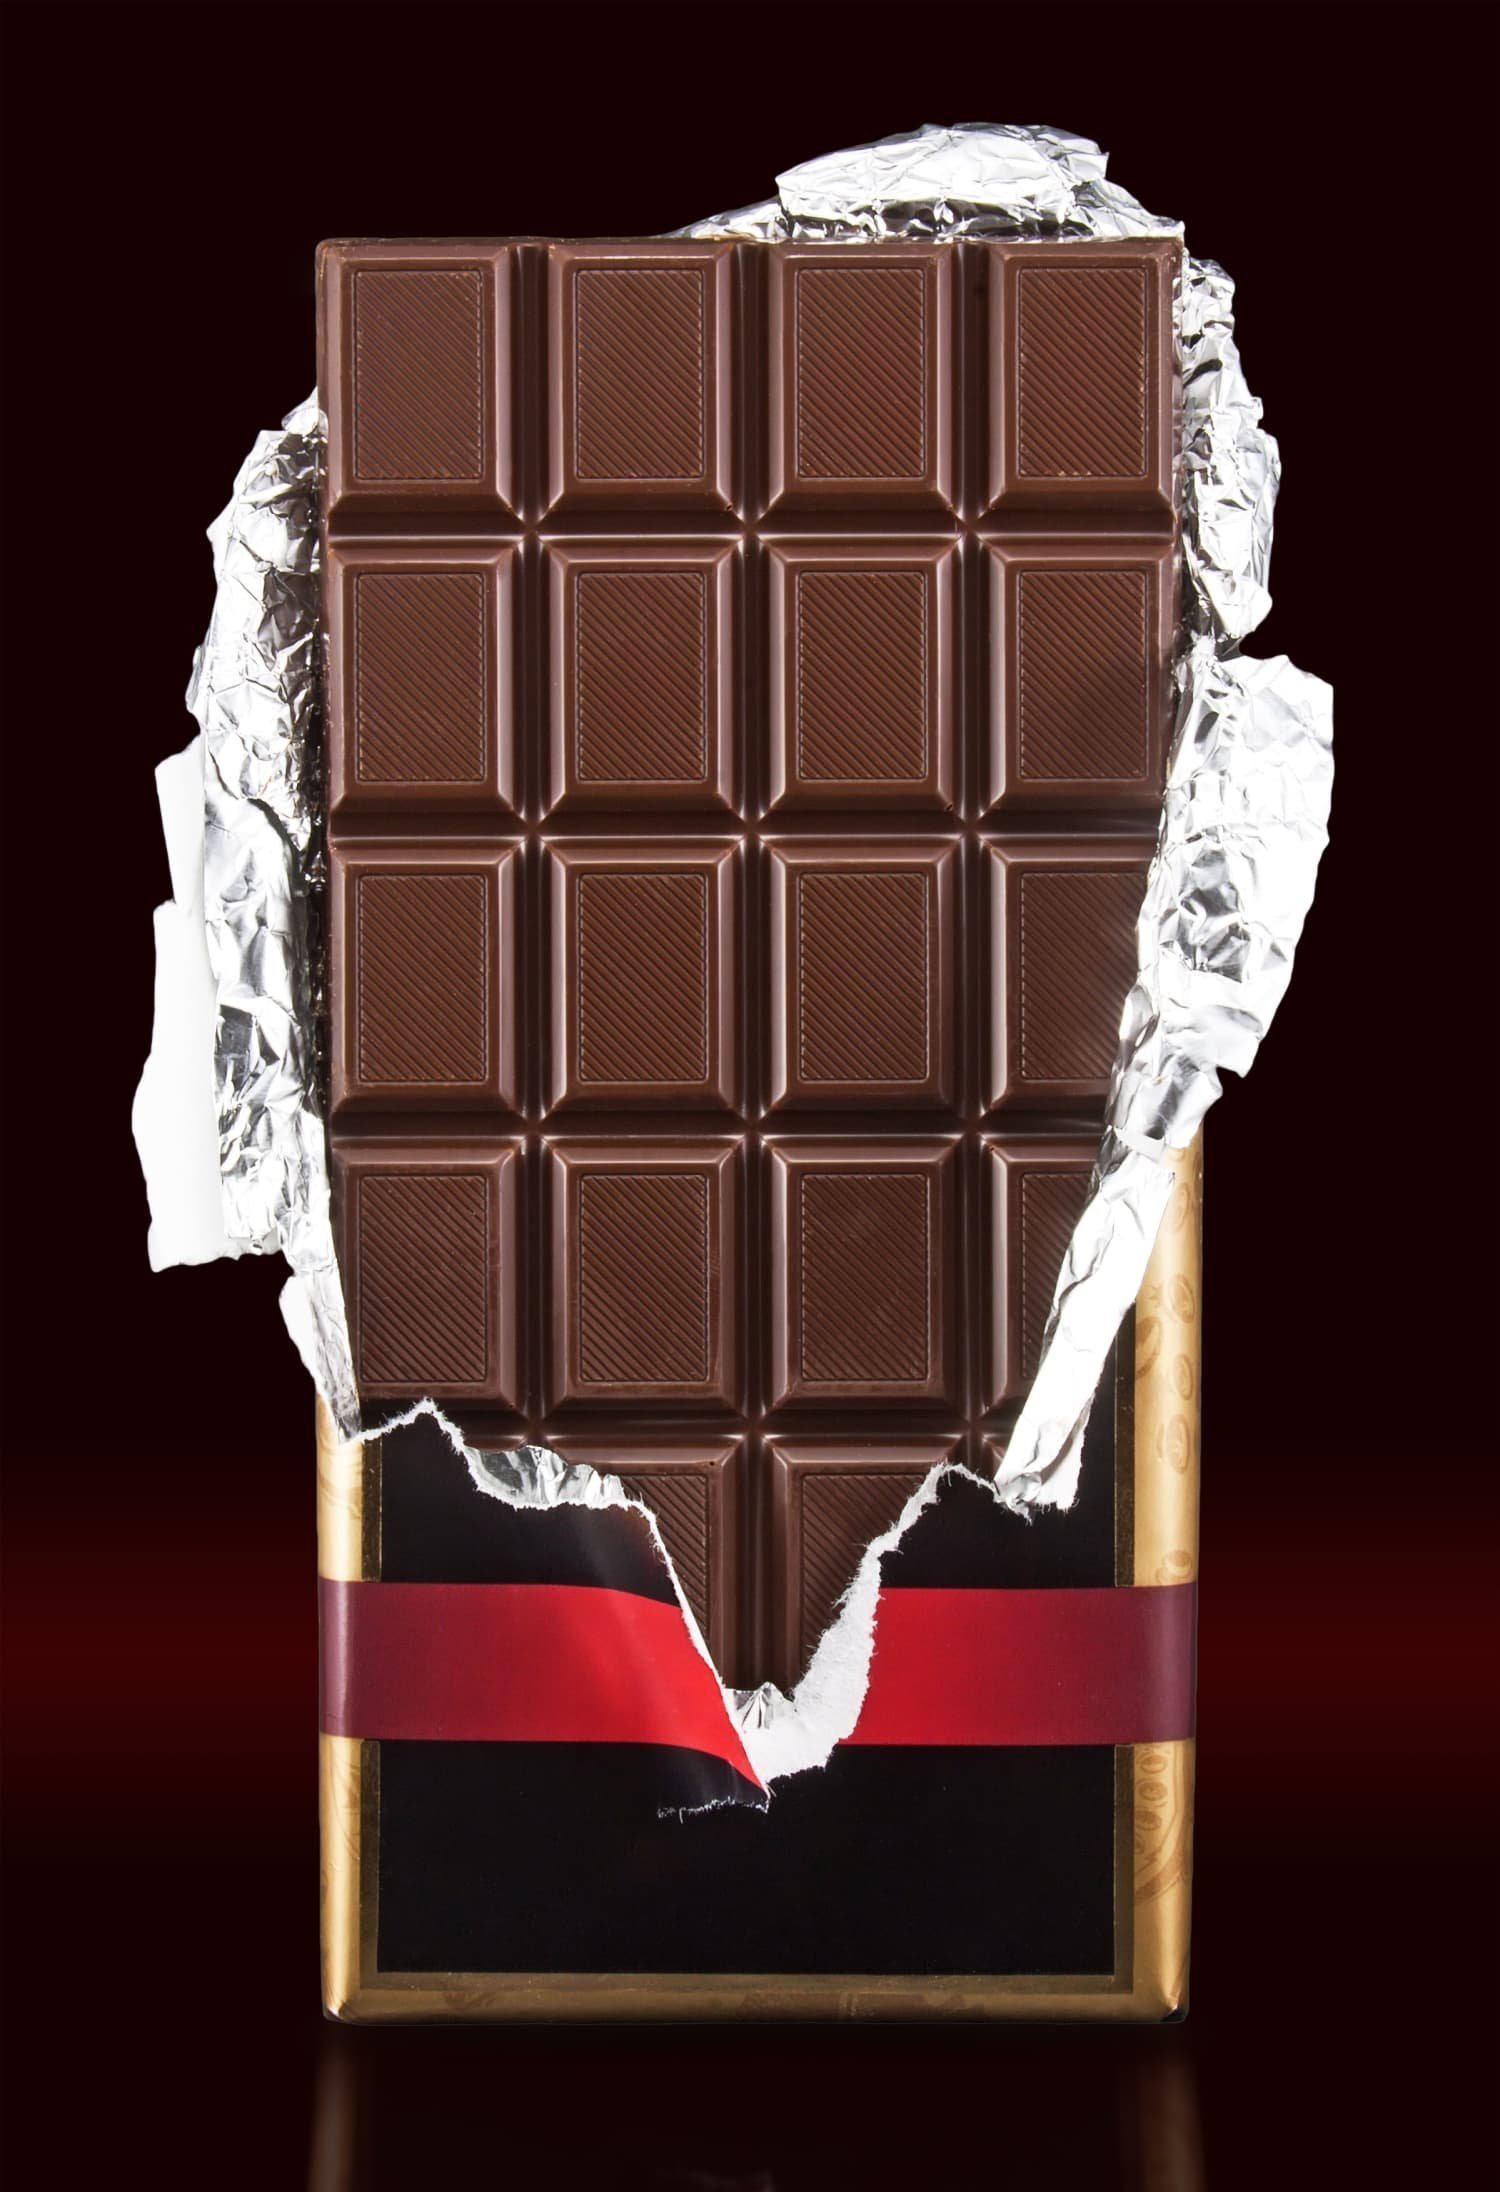 Шоколадка в обертке - 54 фото